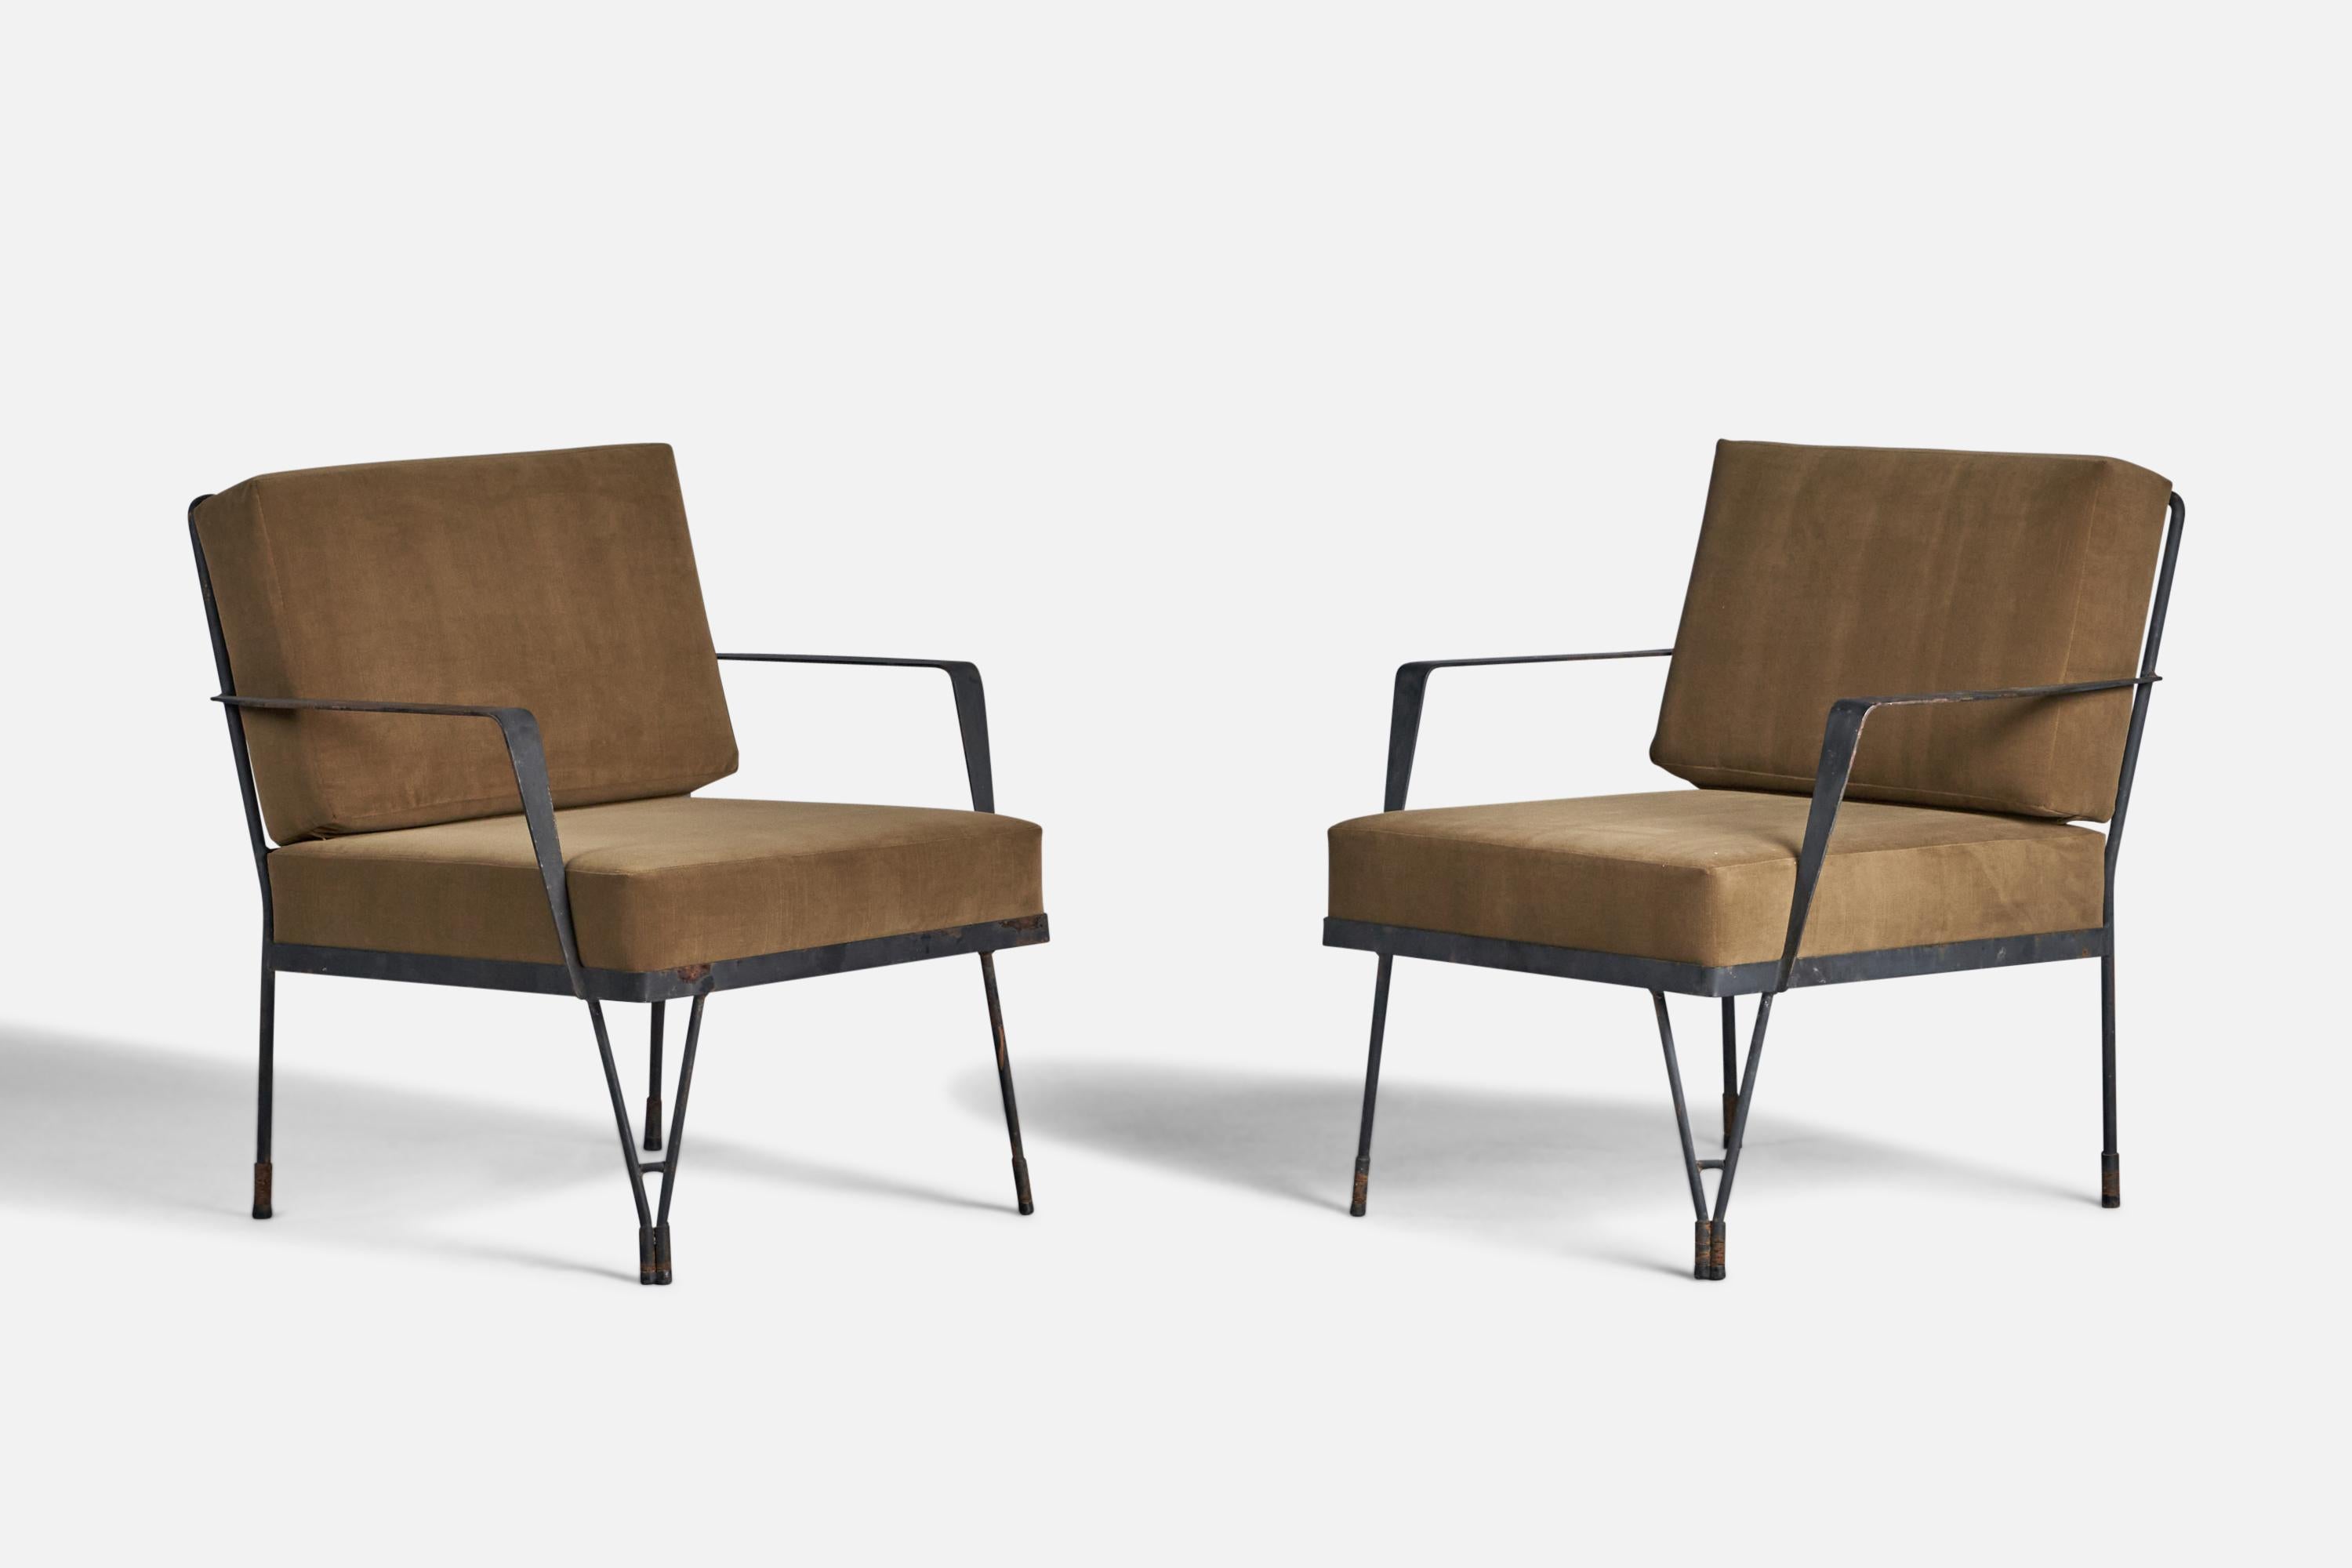 Ein Paar Lounge-Sessel aus schwarz lackiertem Metall, Messing und grauem Samt, entworfen und hergestellt in den USA, 1950er Jahre.

17